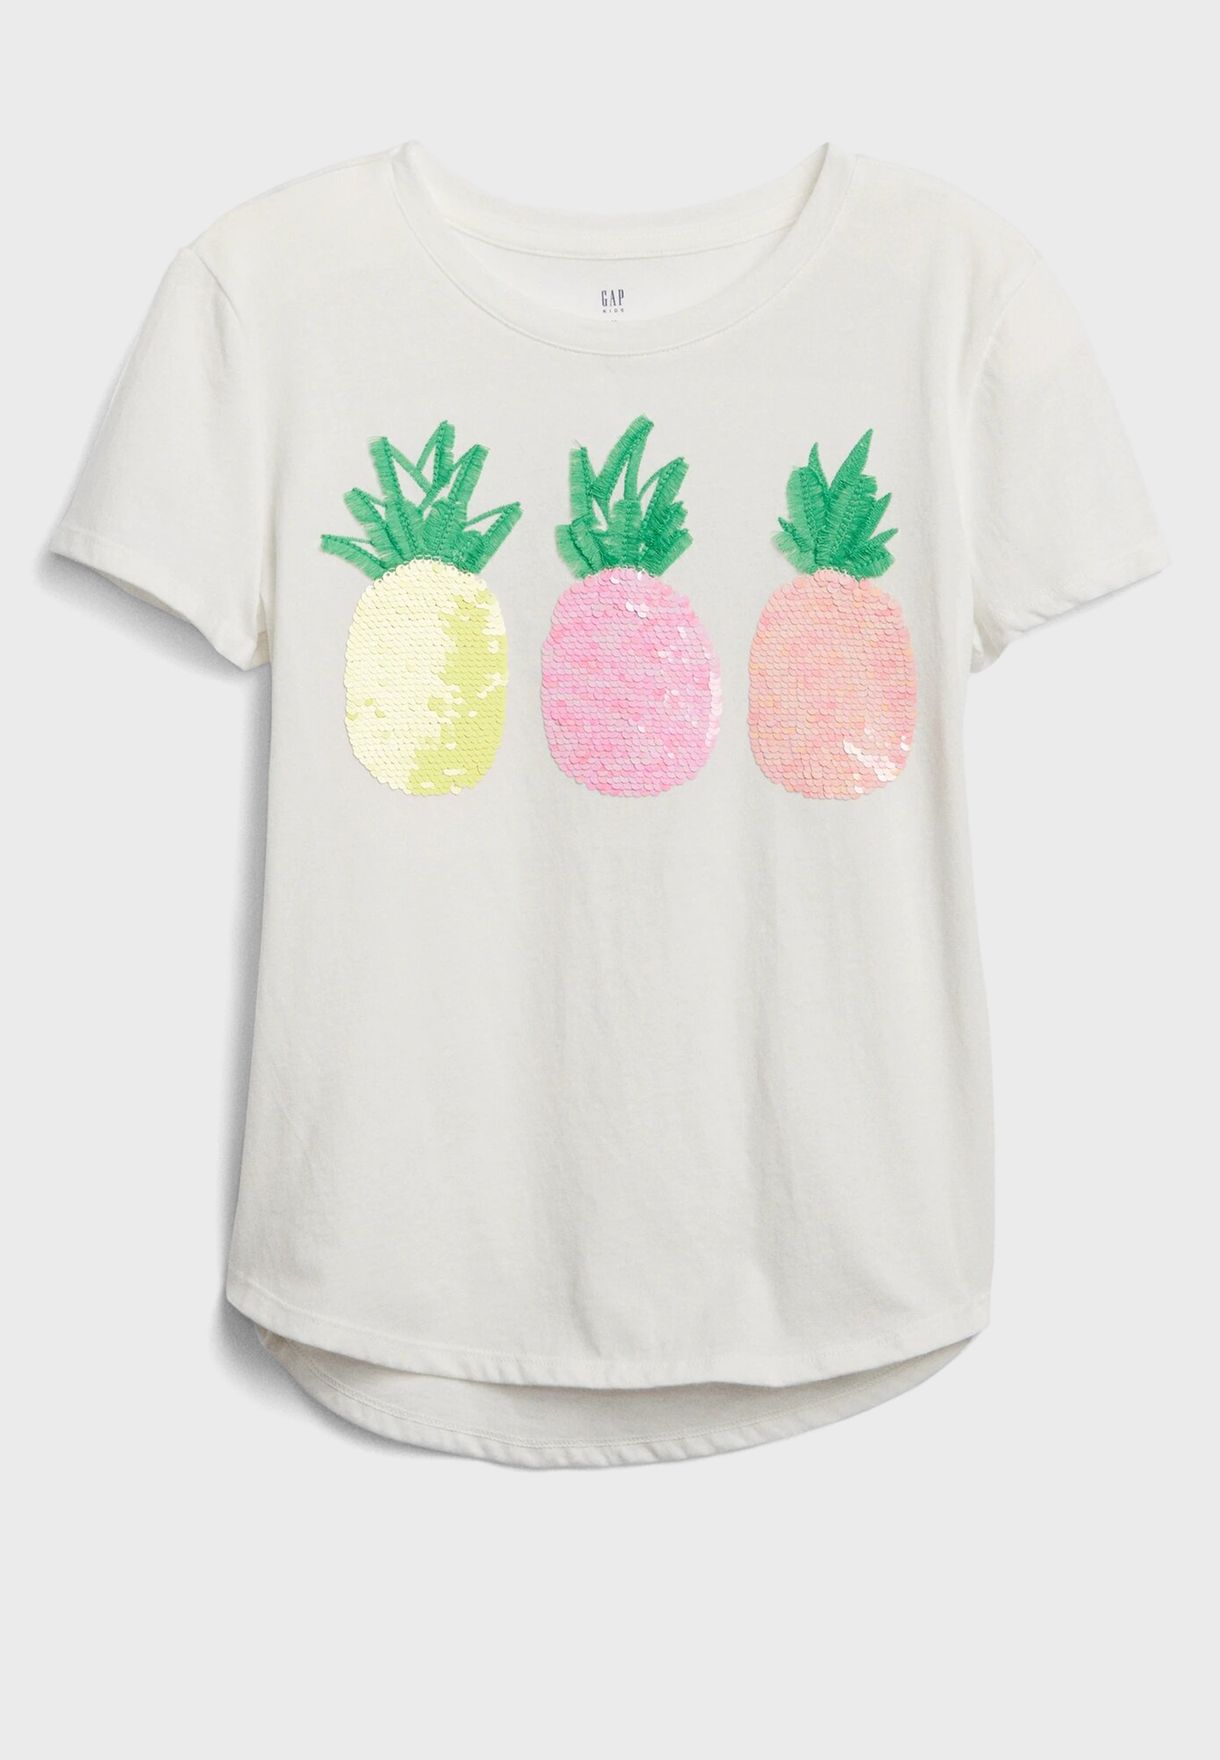 pineapple shirt for kids